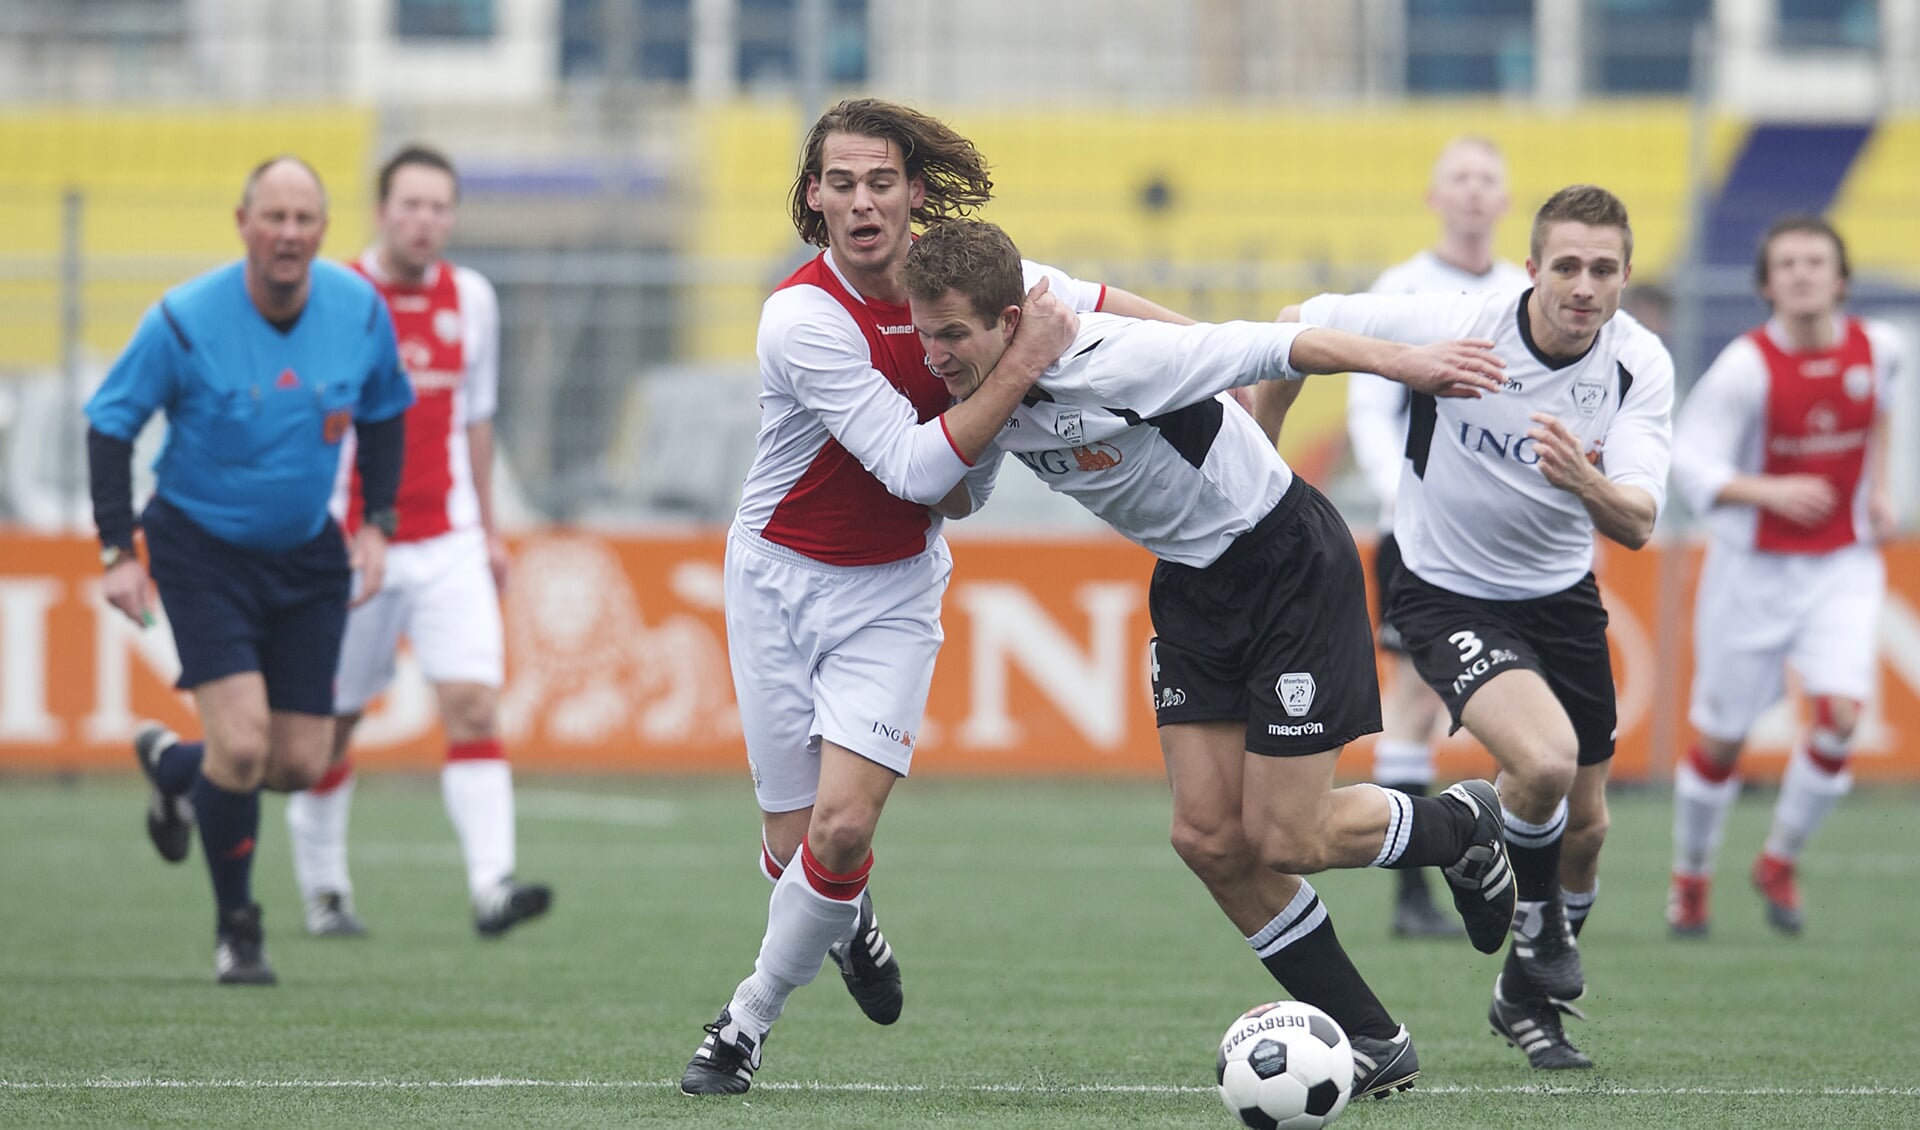 Foreholte-speler Sam Lemmers (l) in duel met Christiaan Laan van Meerburg. | Foto: Orange Pictures / WJ Dijkdrent 